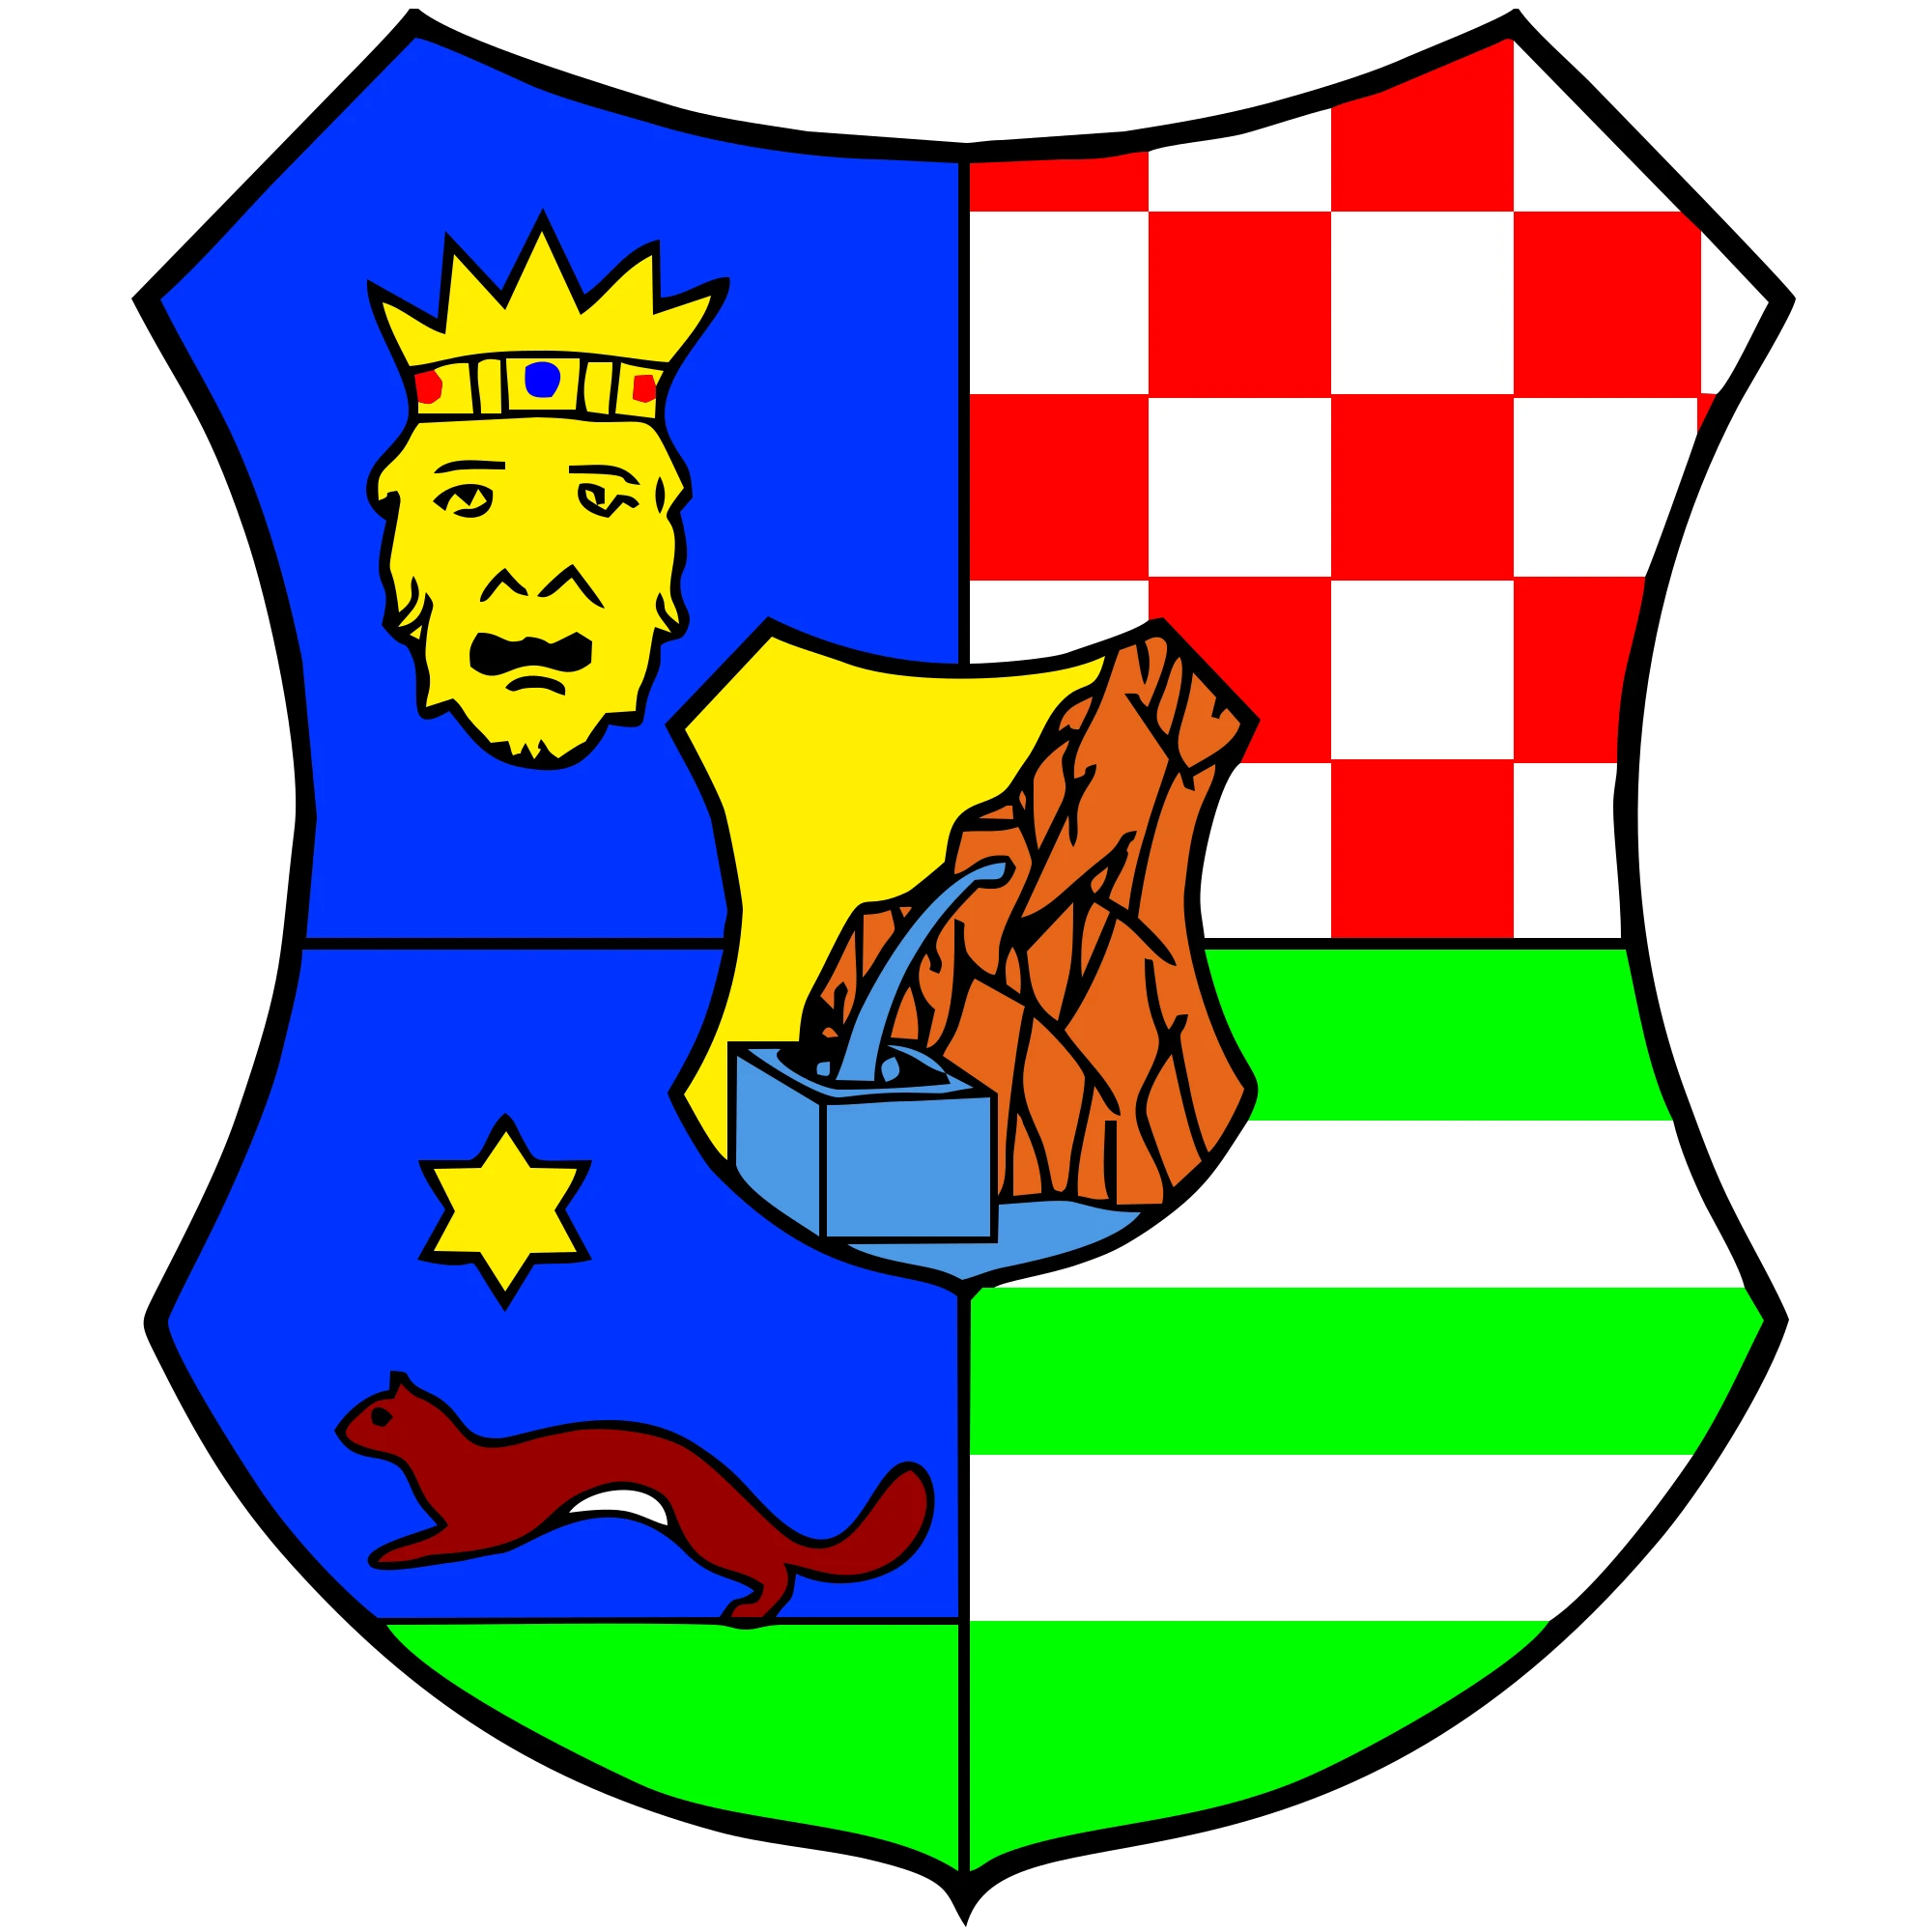 Zagrebačka Županija